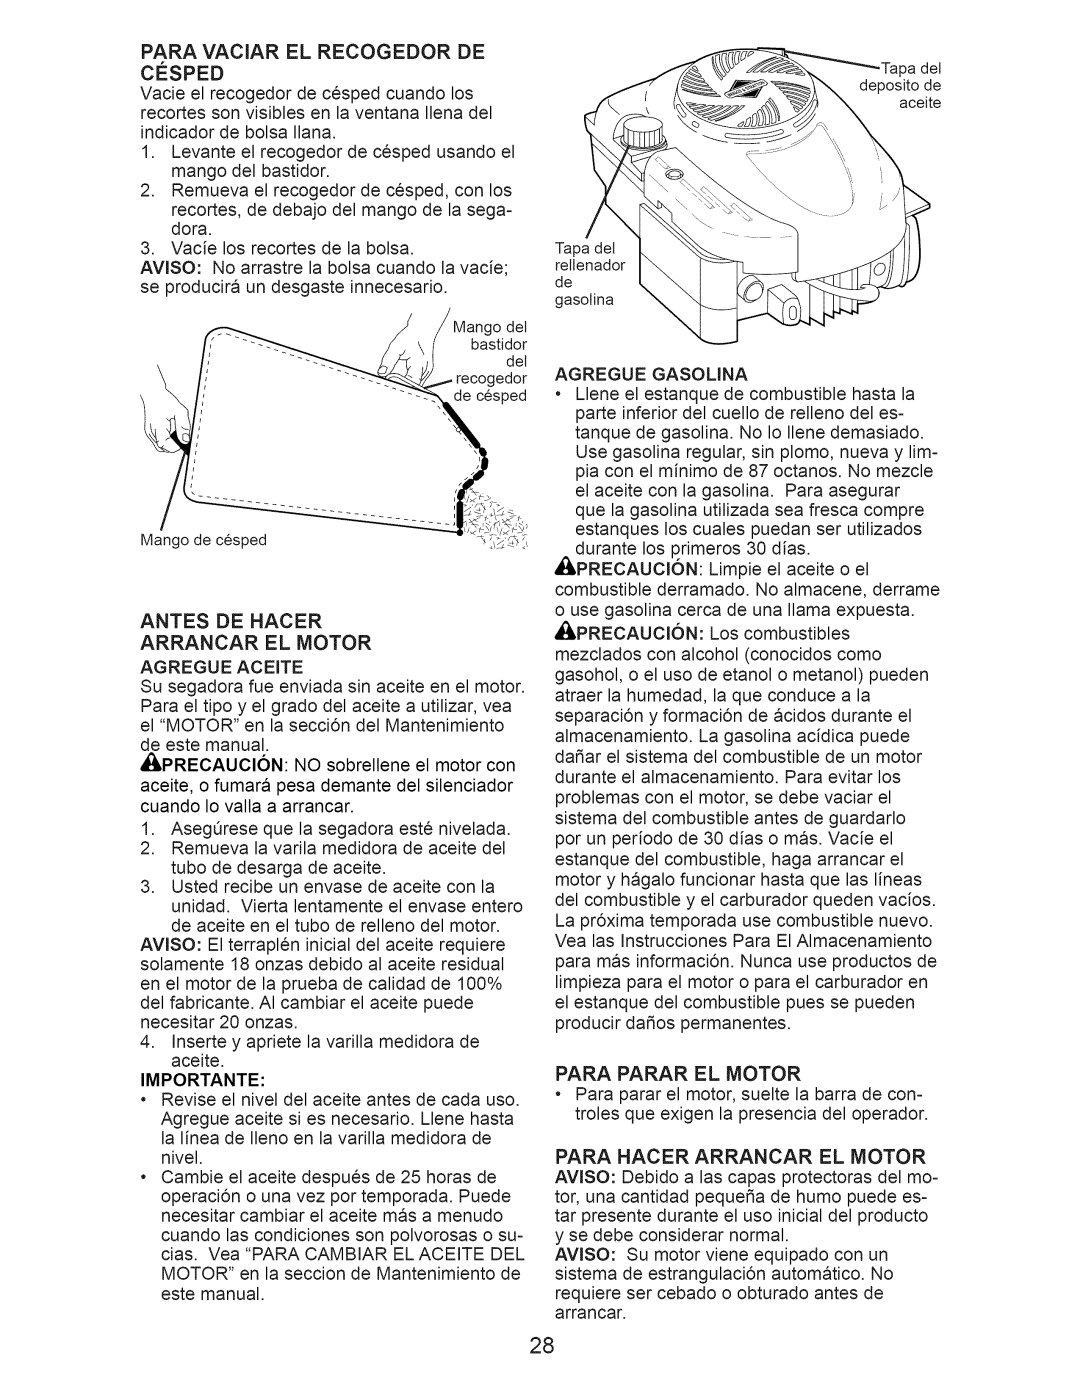 Craftsman 917.374351 manual Antes De Hacer Arrancar El Motor, Importante, Para Parar El Motor 